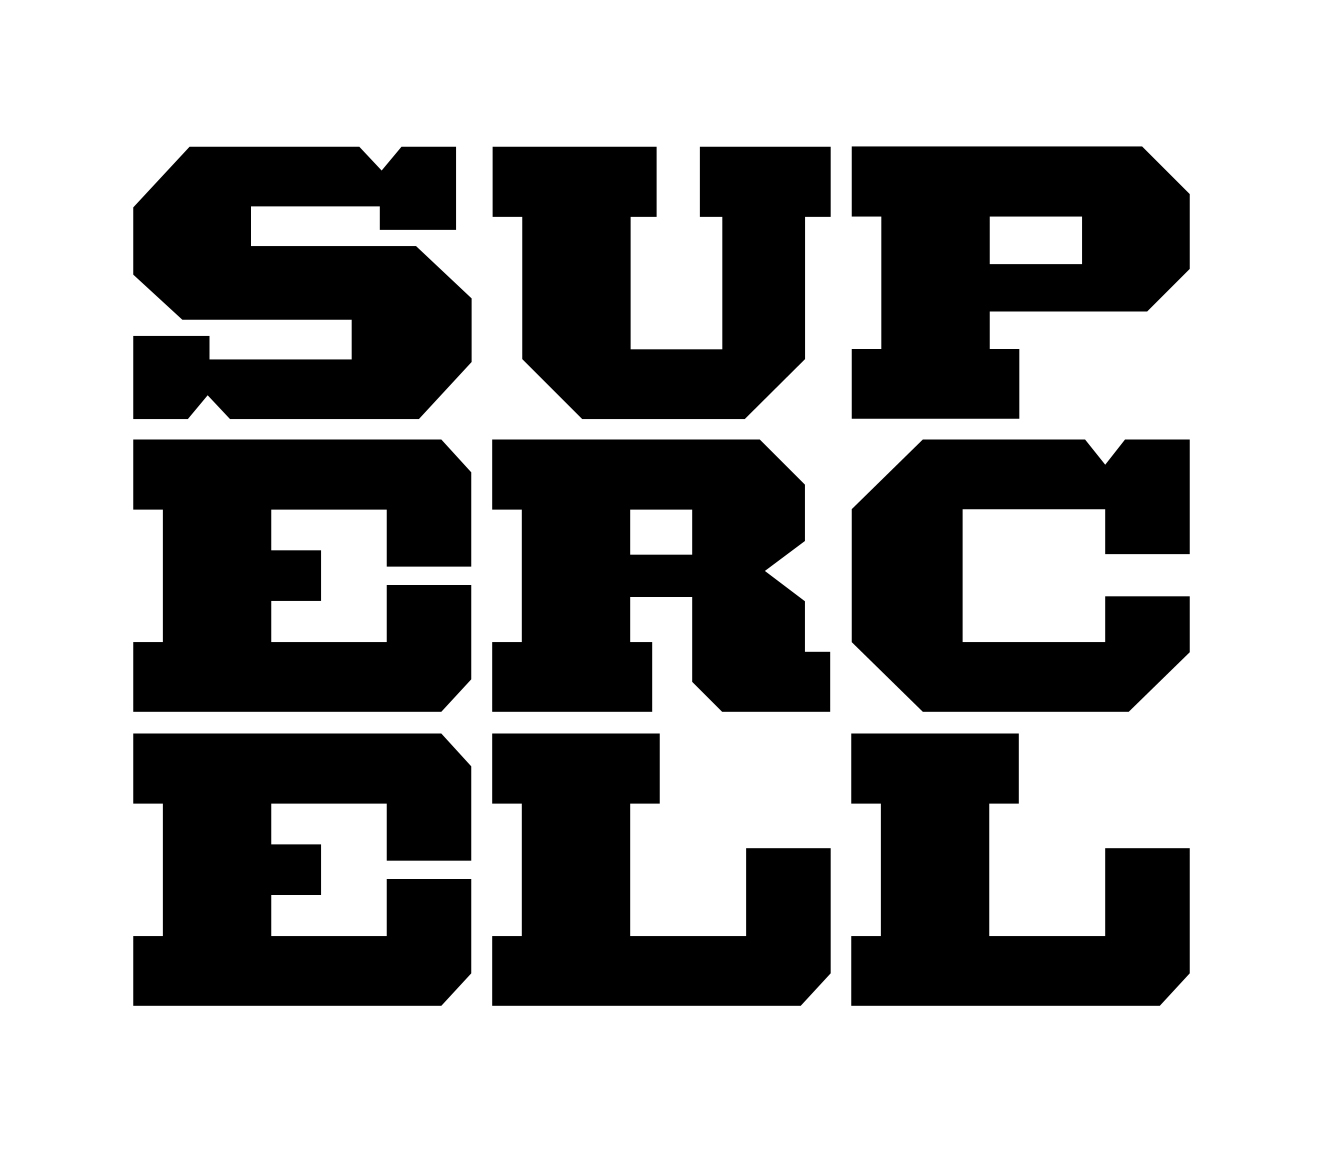 supercell-logo-whitebg.jpg